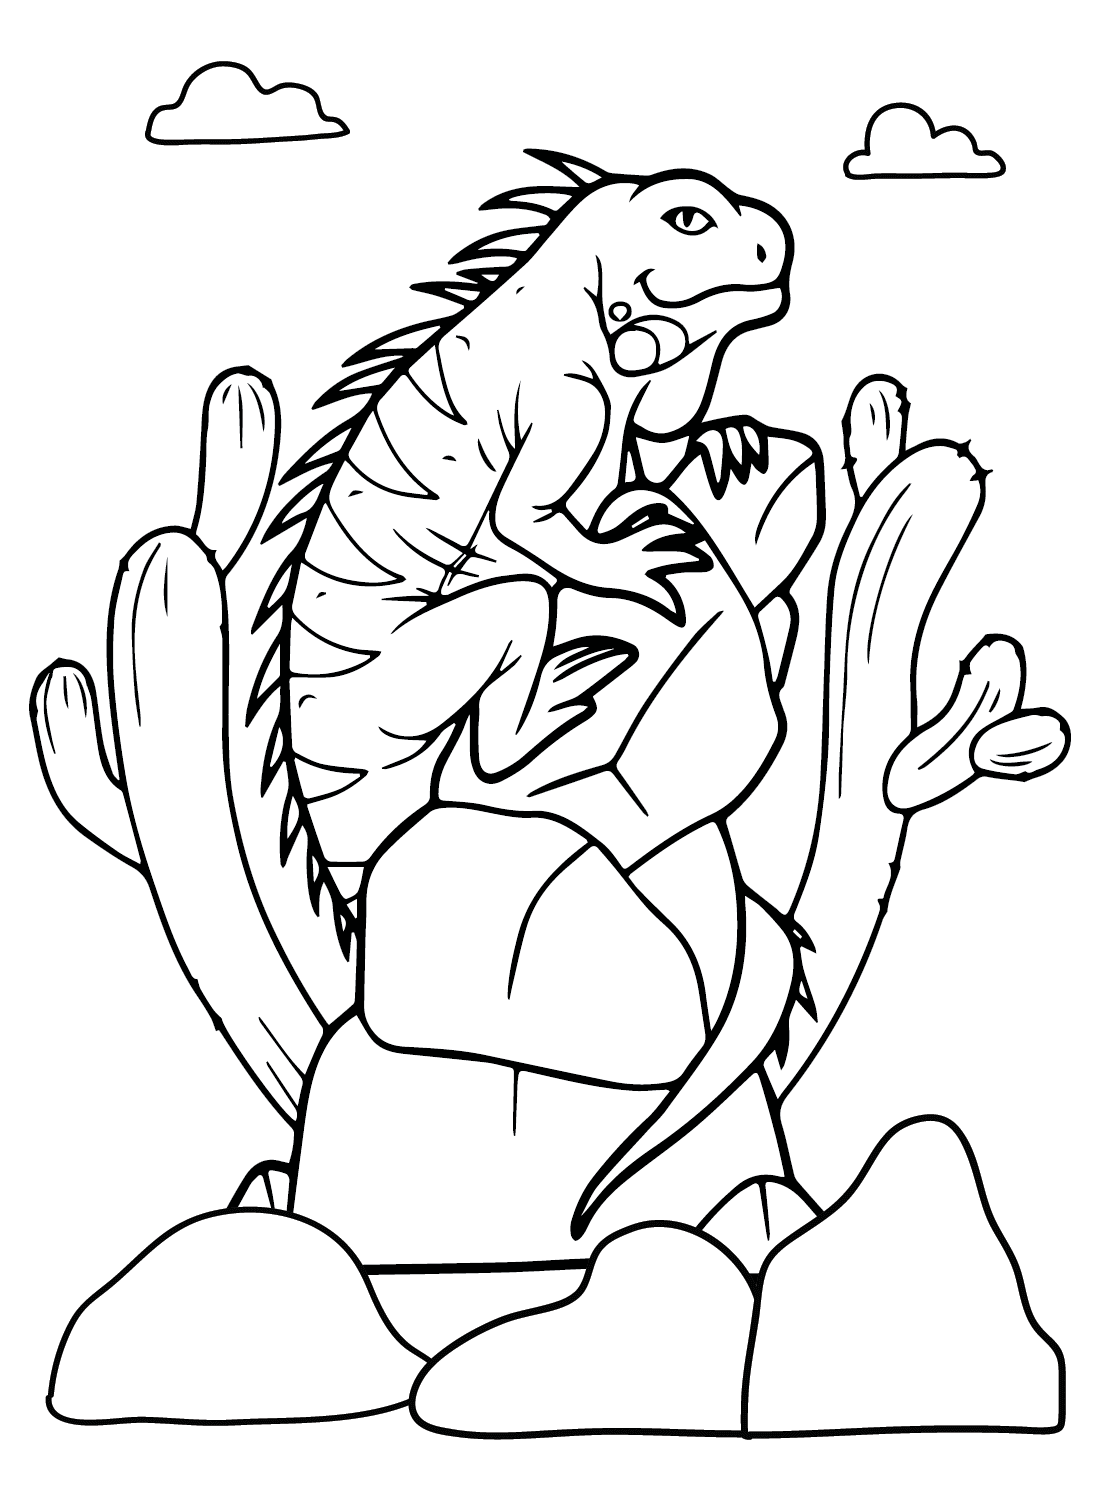 Leguaan kleurplaat van Iguana